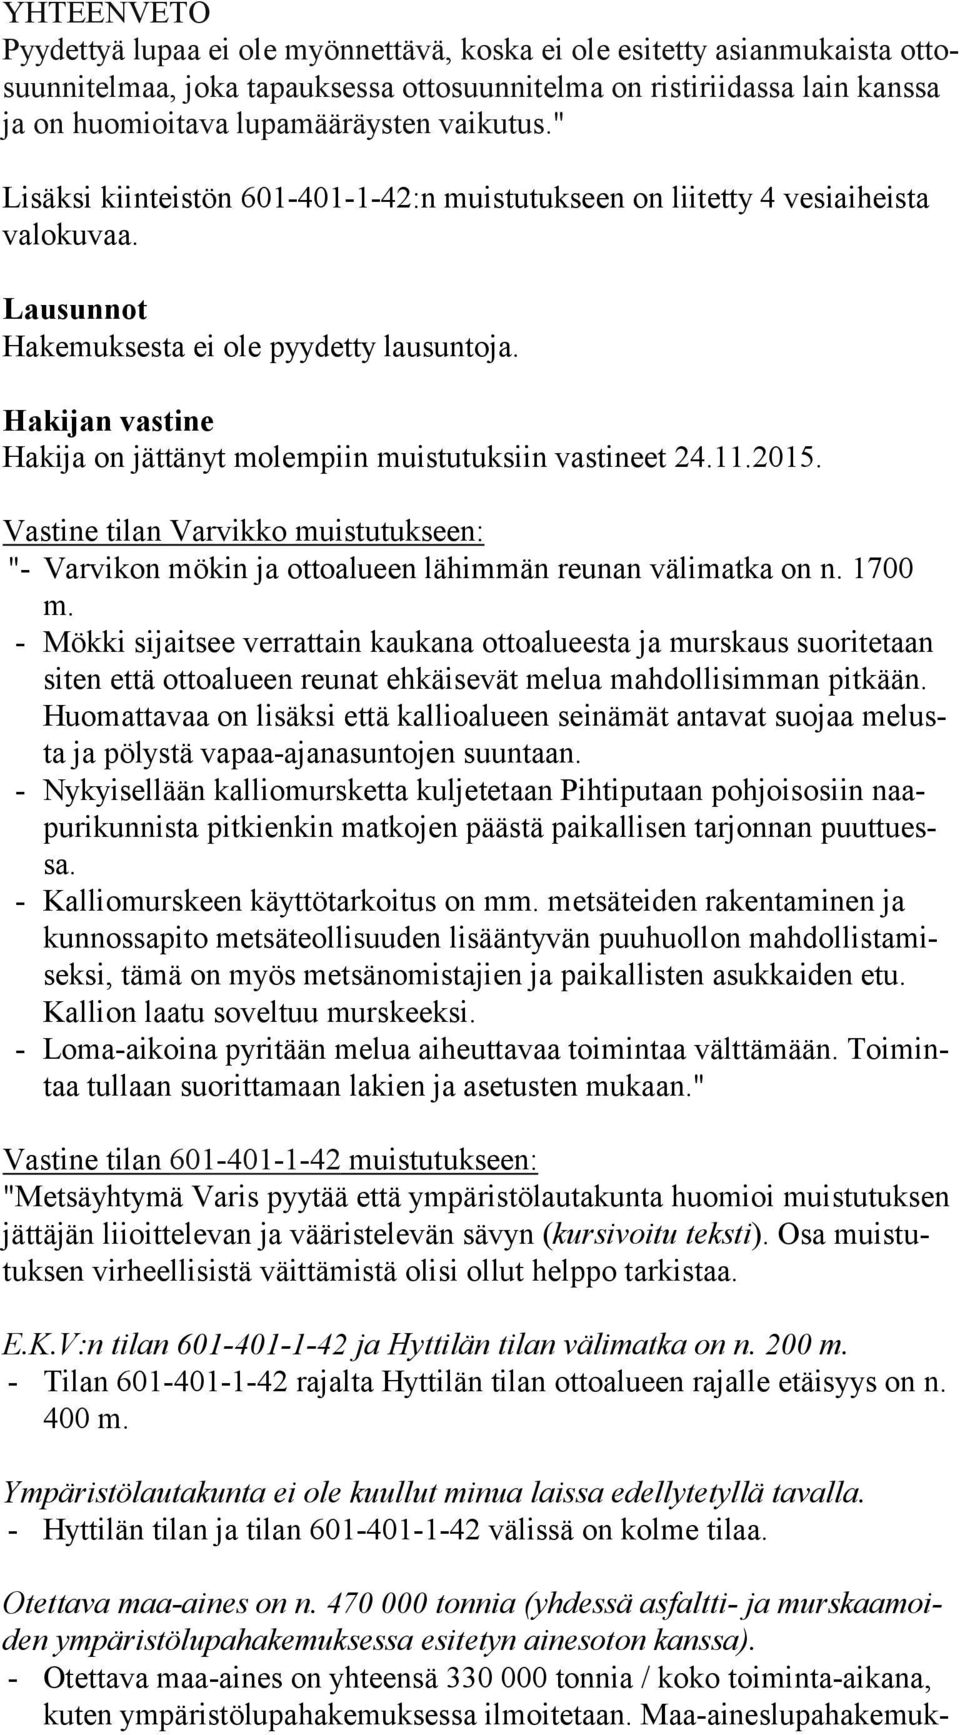 Hakijan vastine Hakija on jättänyt molempiin muistutuksiin vastineet 24.11.2015. Vastine tilan Varvikko muistutukseen: "- Varvikon mökin ja ottoalueen lähimmän reunan välimatka on n. 1700 m.